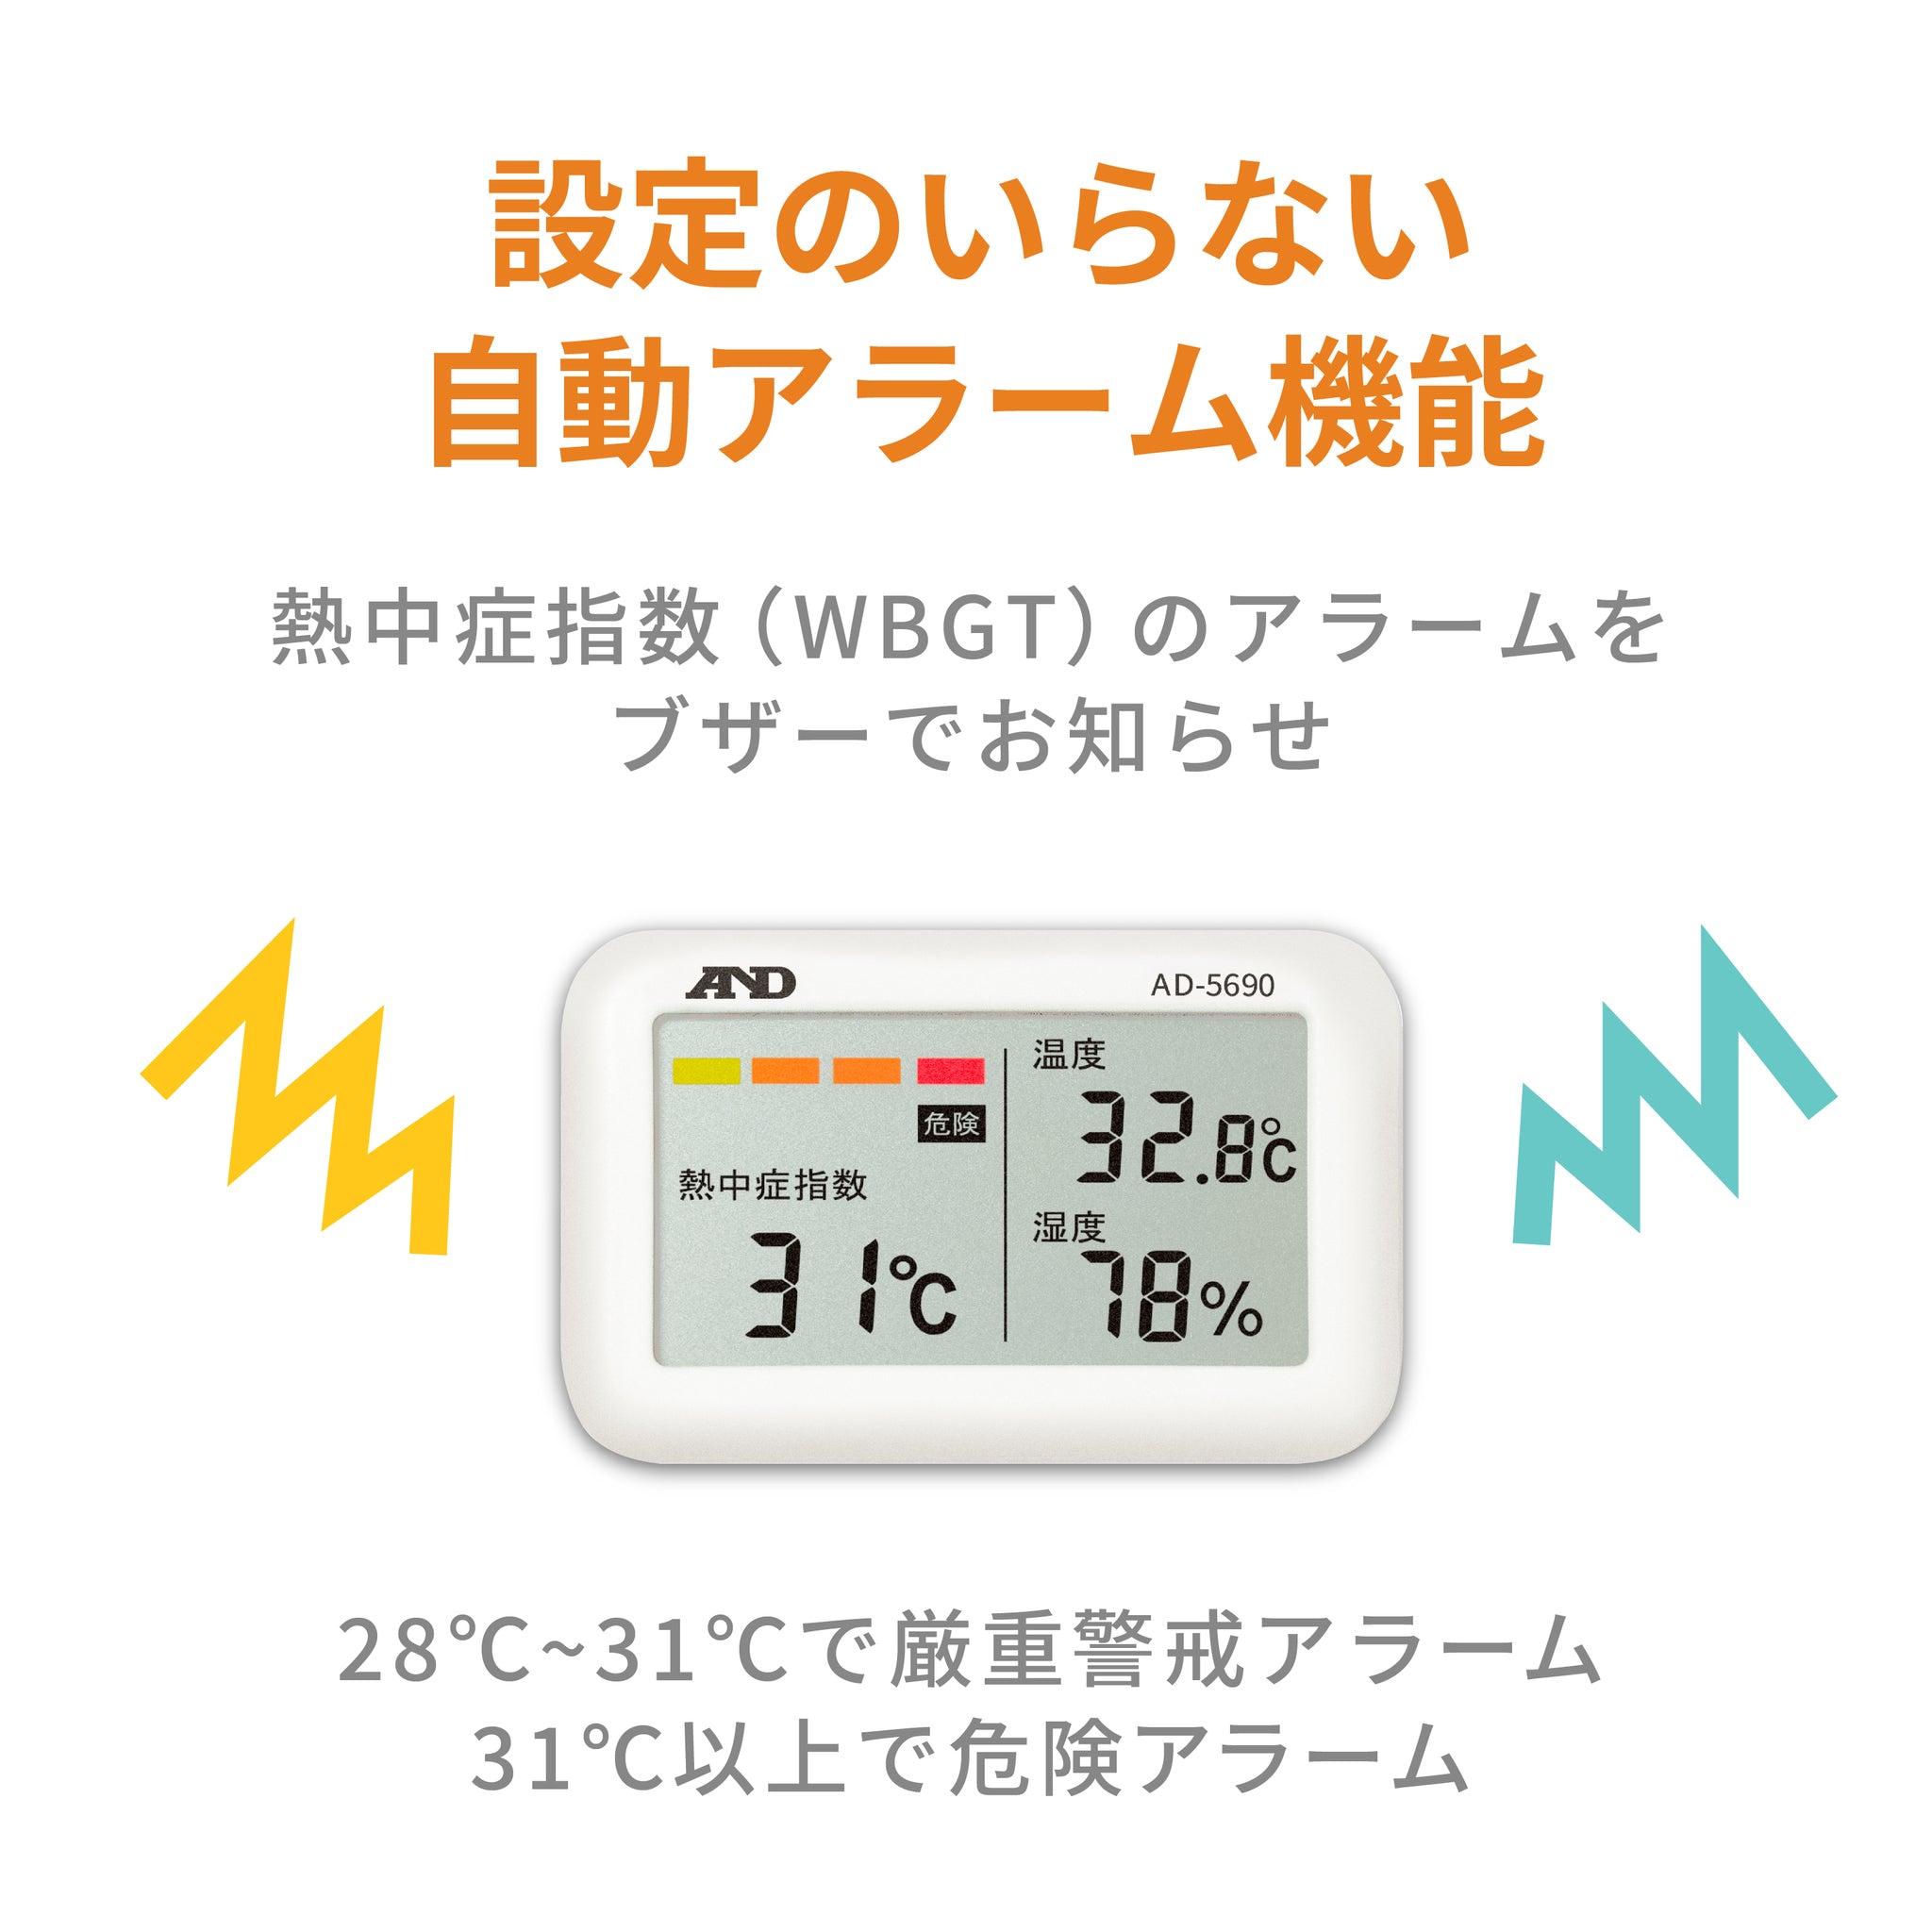 日本限定 A D 熱中症指数モニター AD-5690 みはりん坊ジュニア